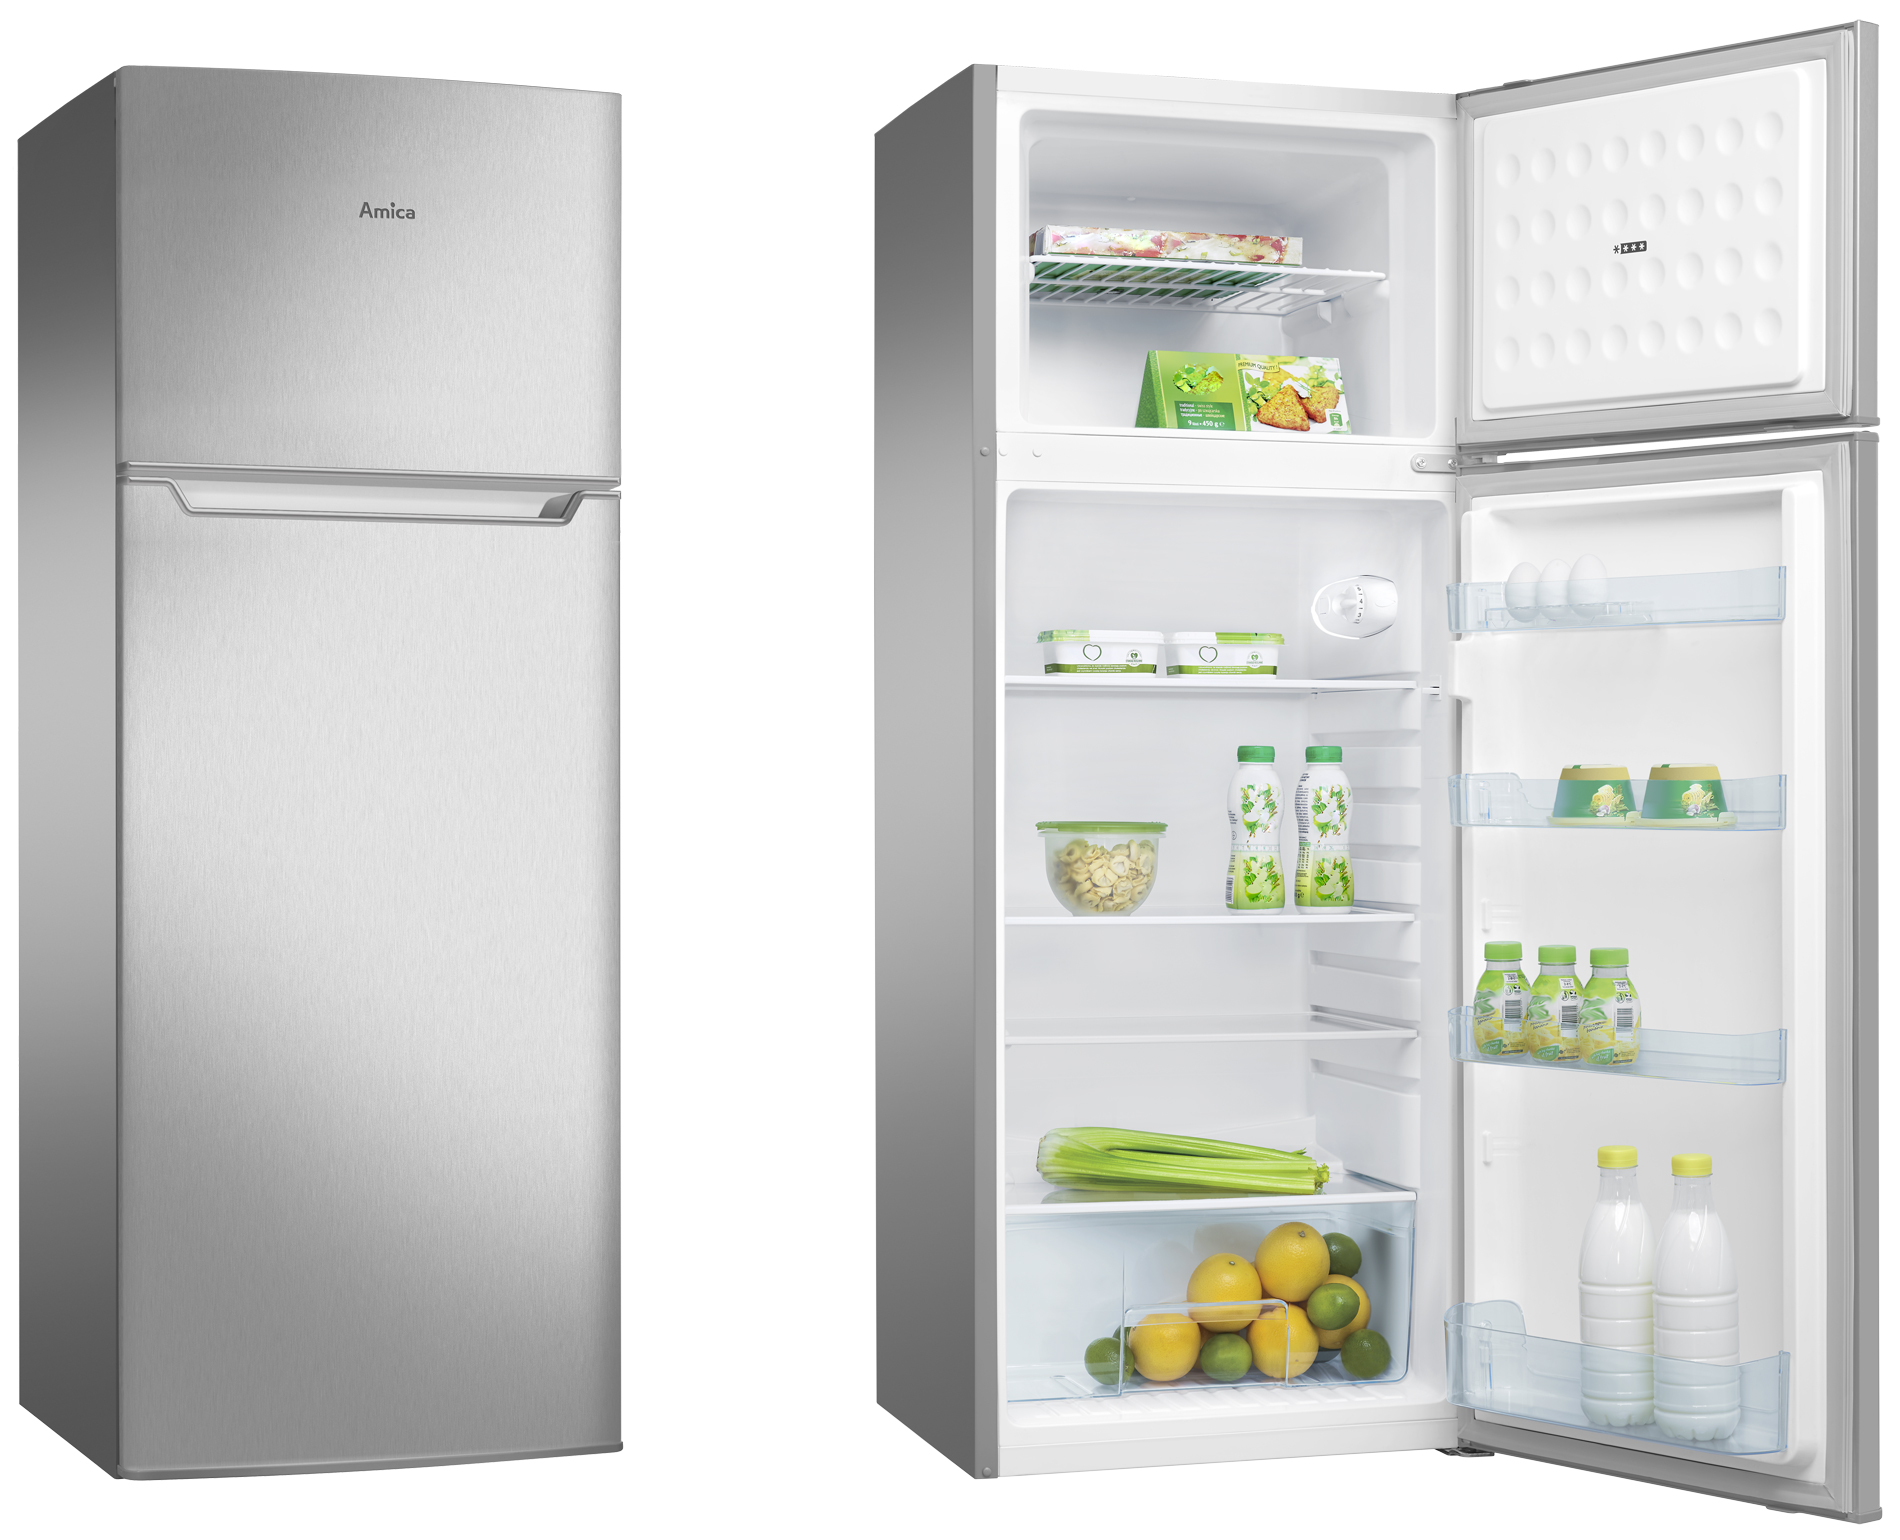 Купить холодильник тагил. Холодильник Siemens морозилка сверху. Schaub Lorenz slu 235 w6холодильник встраиваемый холодильник. Двукамерный холодильник Amica. Холодильник бош двухкамерный морозилка сверху 185см.